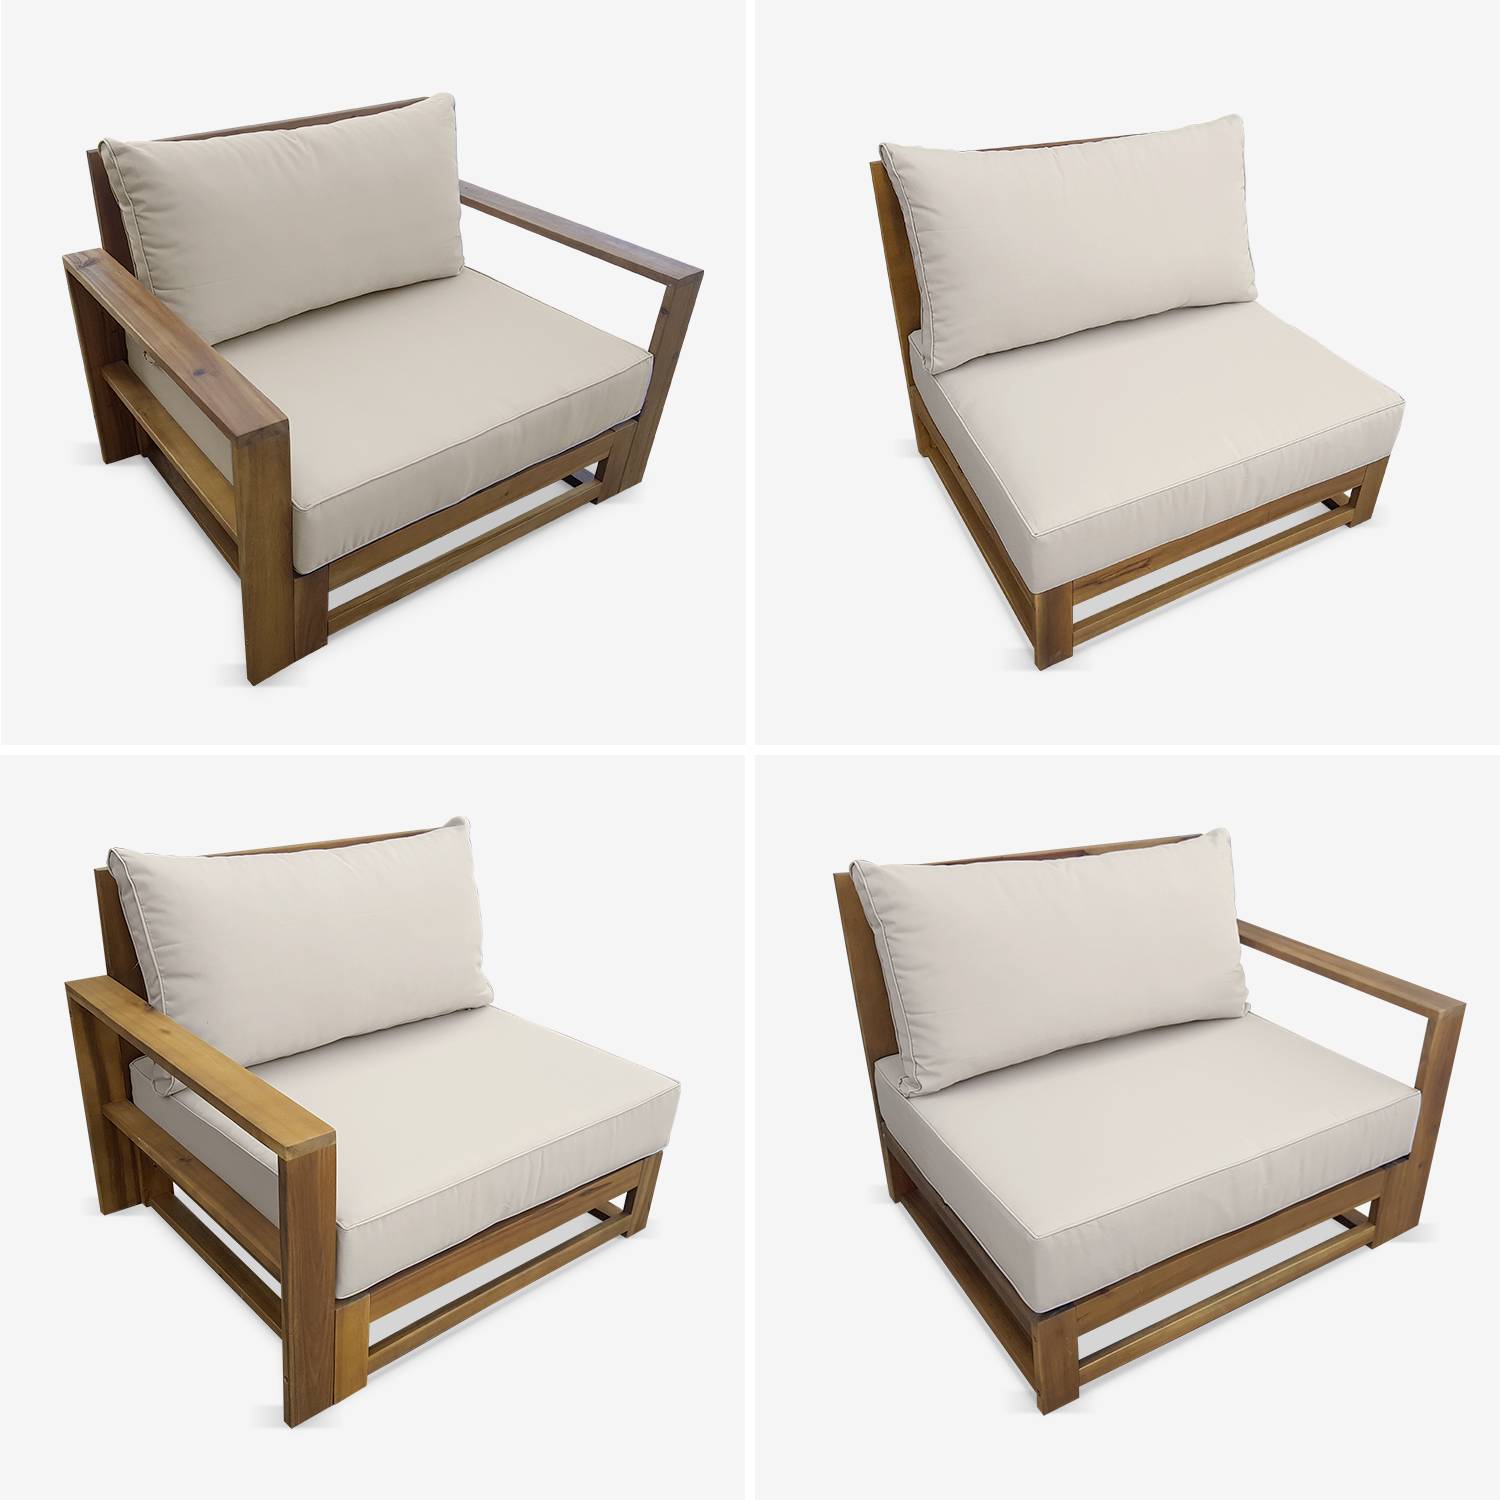 Salon de jardin en bois 5 places - Mendoza - Coussins beiges, canapé, fauteuils et table basse en acacia, 6 éléments modulables, design Photo4